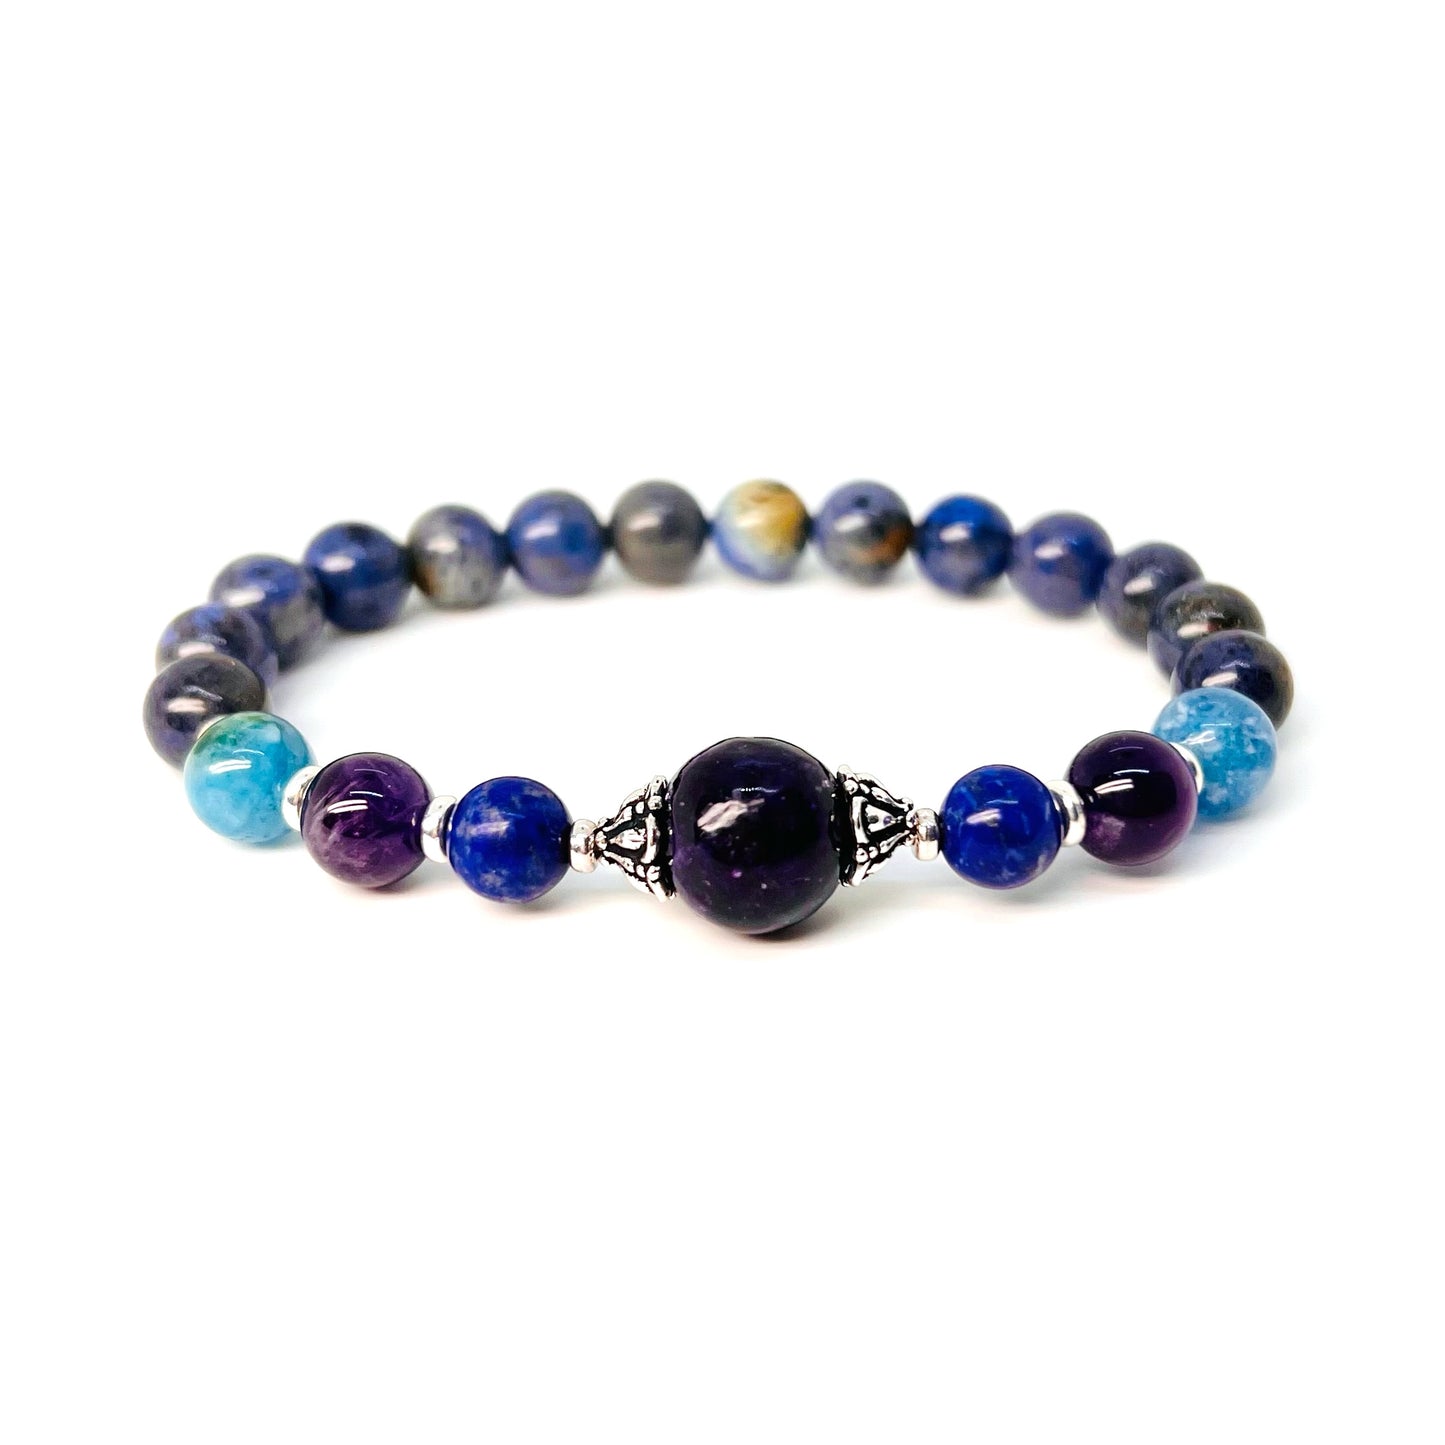 Blue crystal bracelet